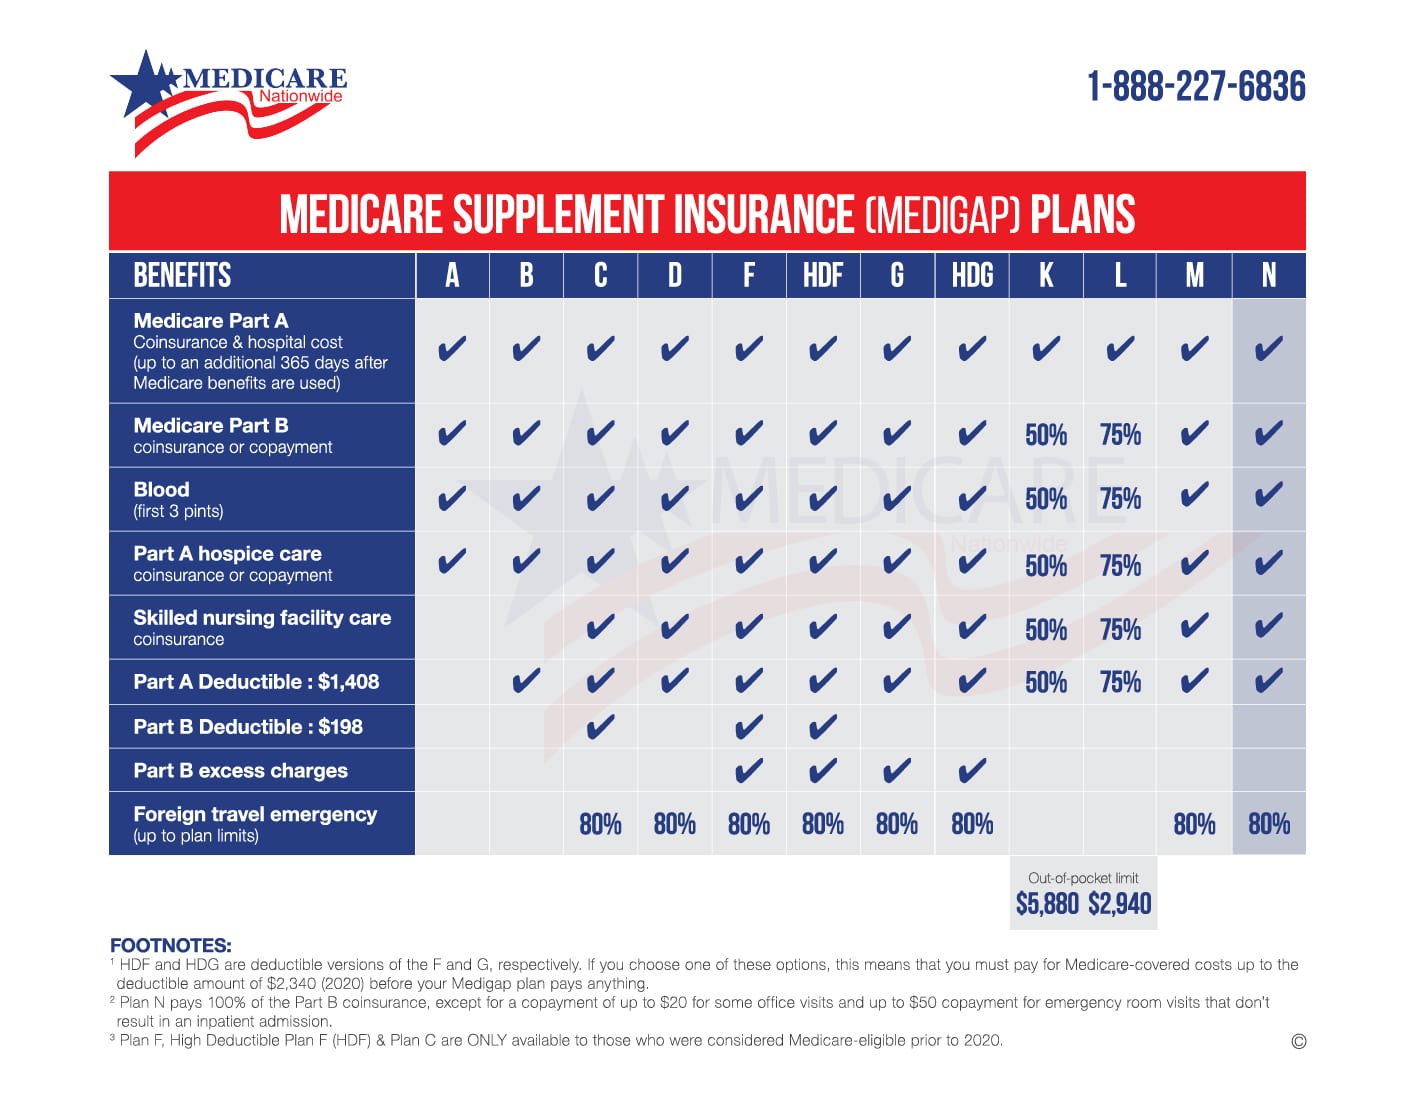 Medicare Supplement Plan N